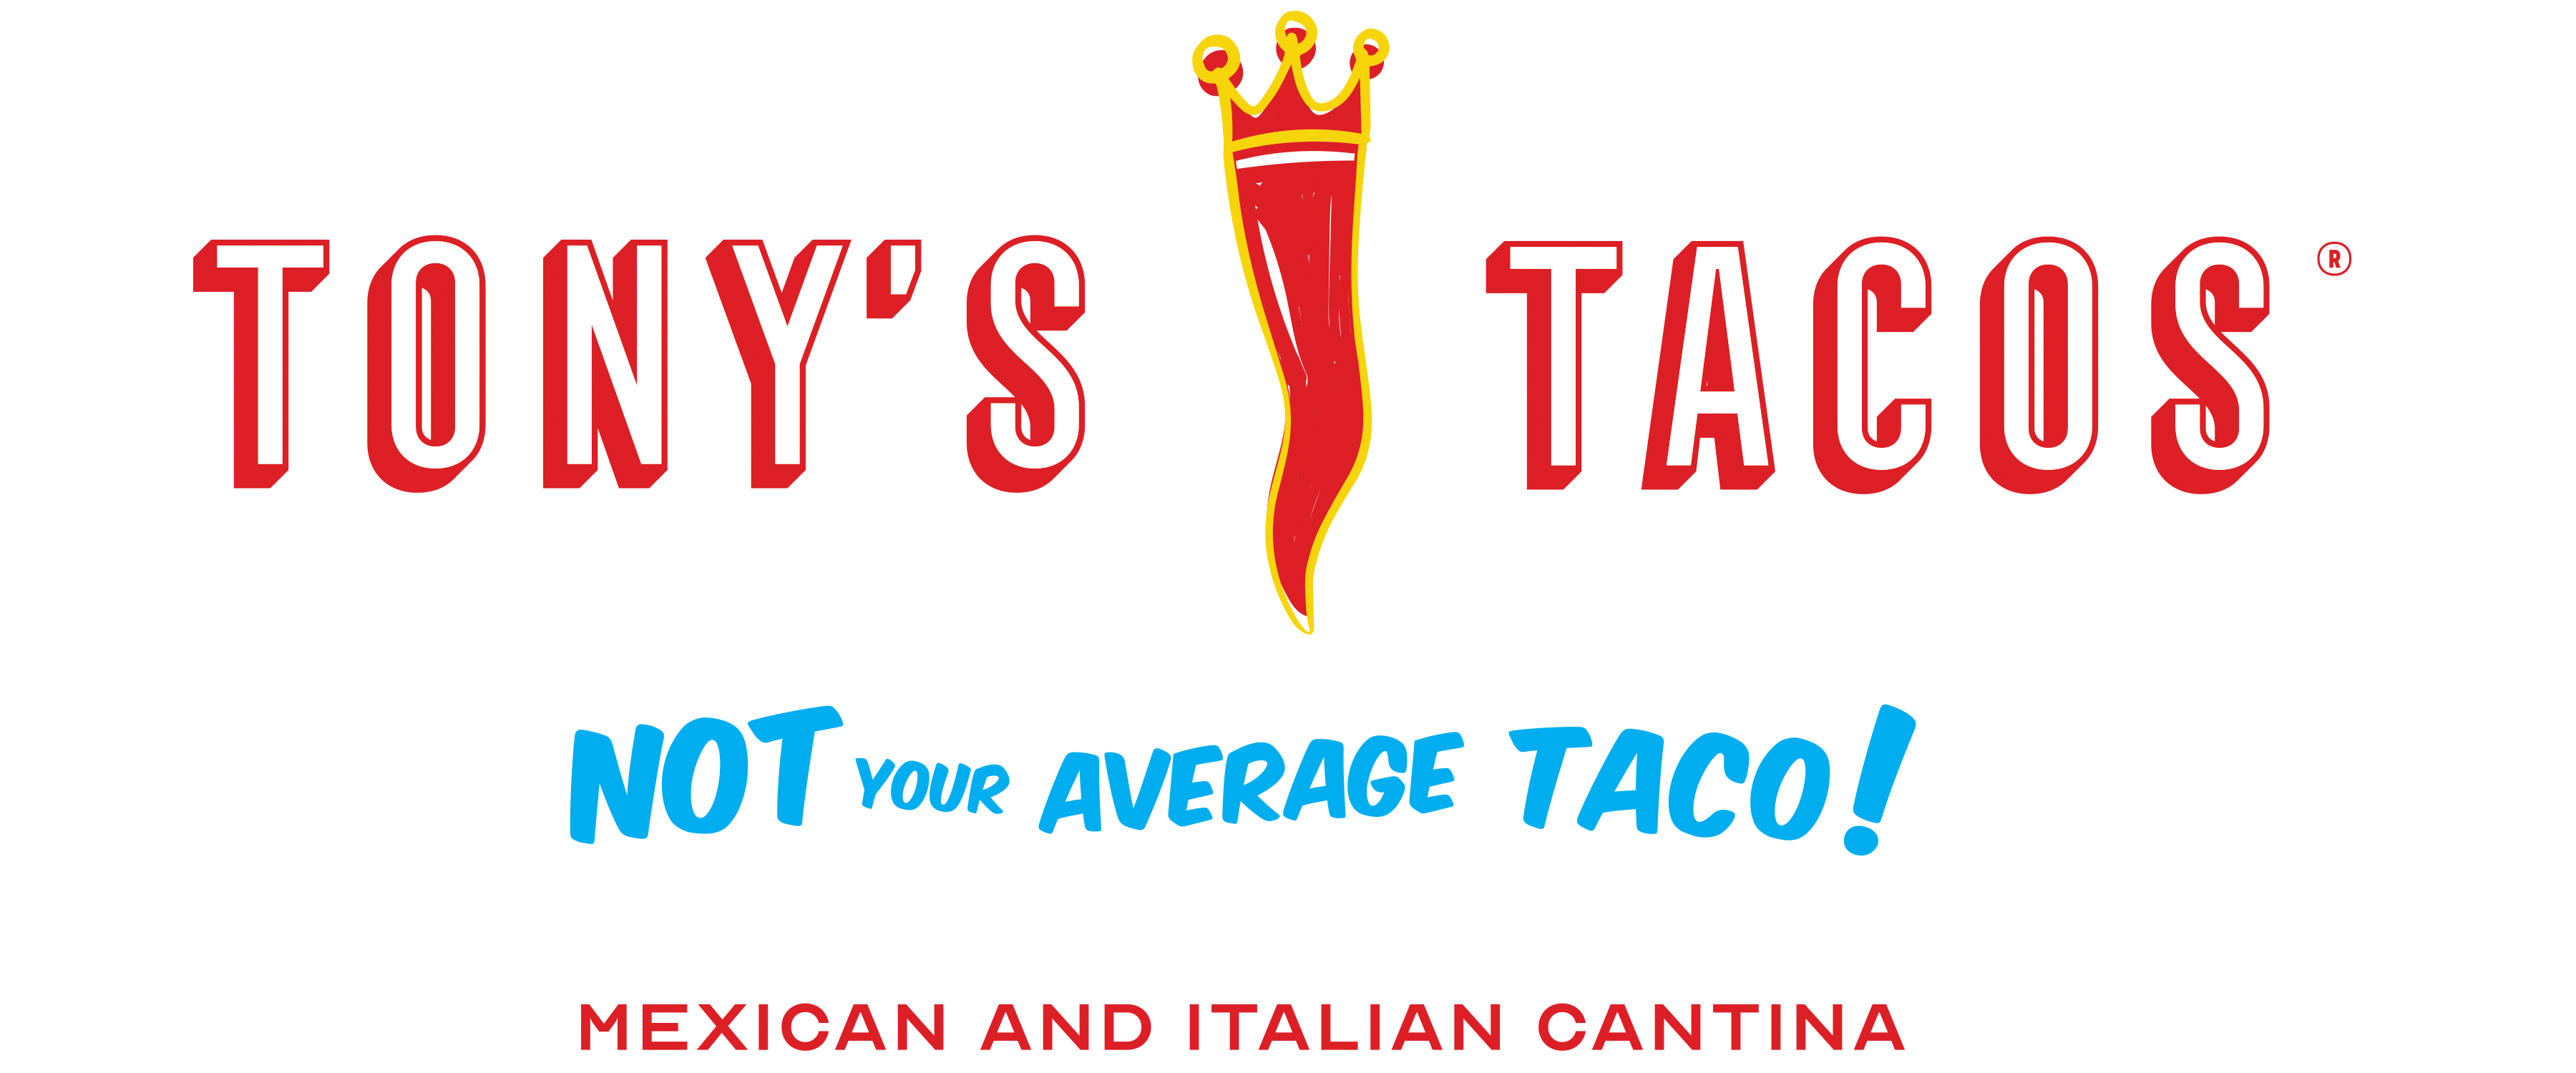 Tony's Taco Home